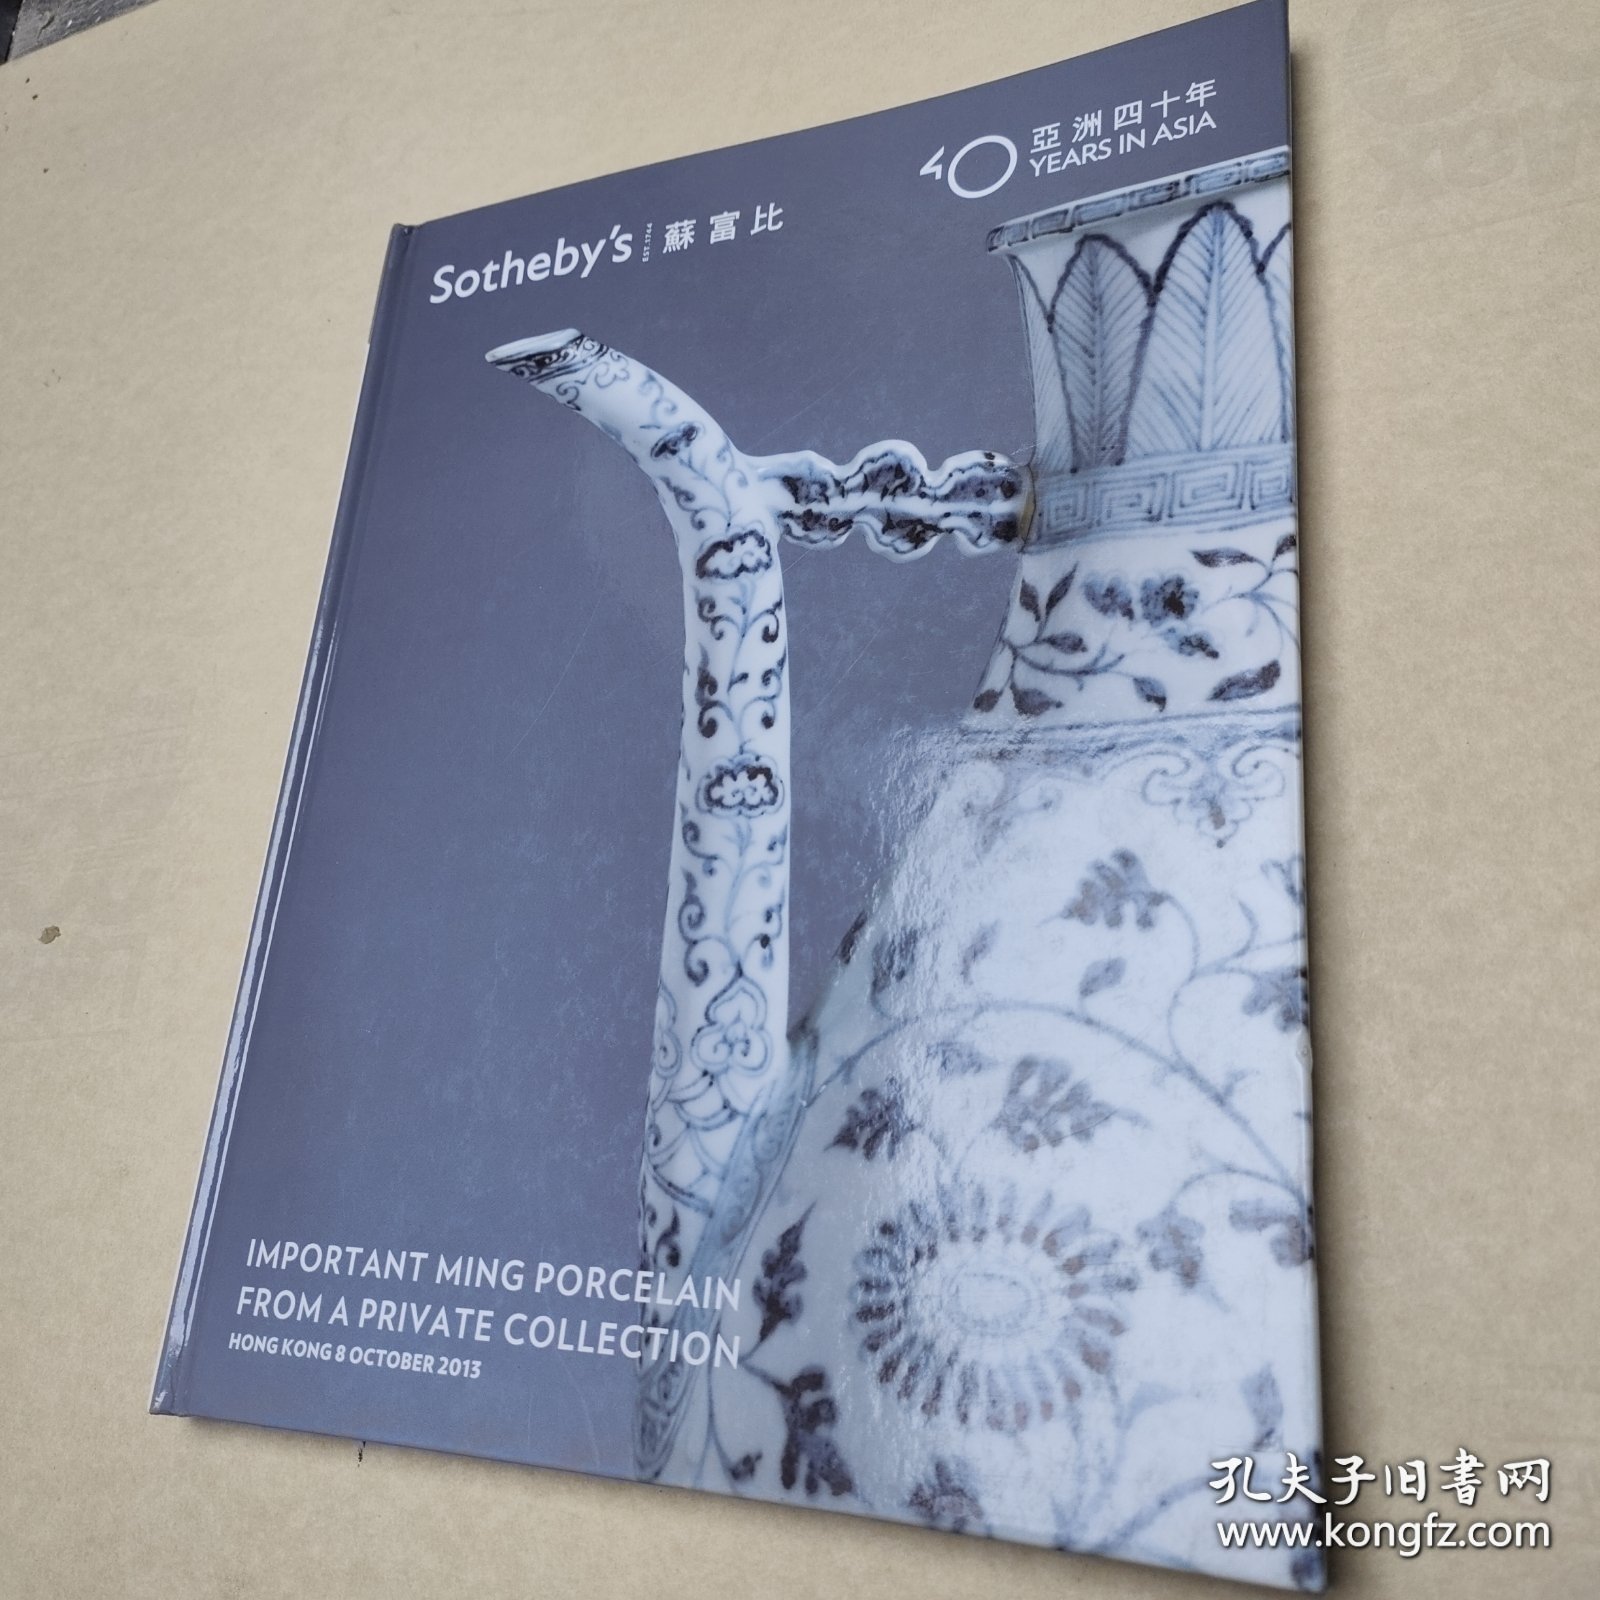 香港苏富比 亚洲四十周年 2013年10月 淳穆博远 私人珍藏重要明代瓷器拍卖专场